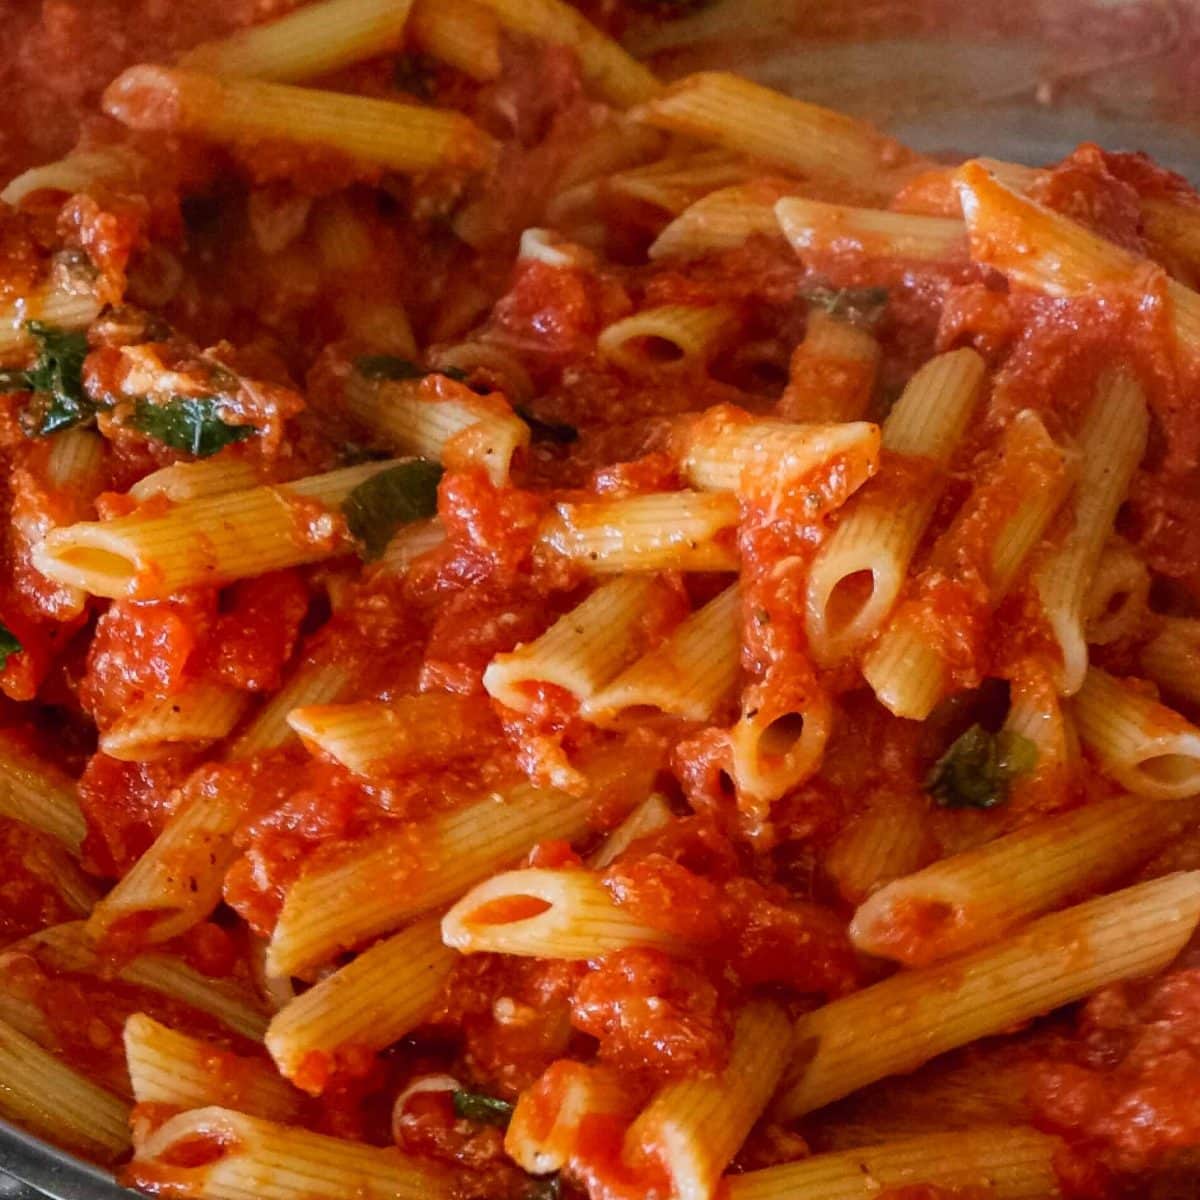 pasta mixed into sauce